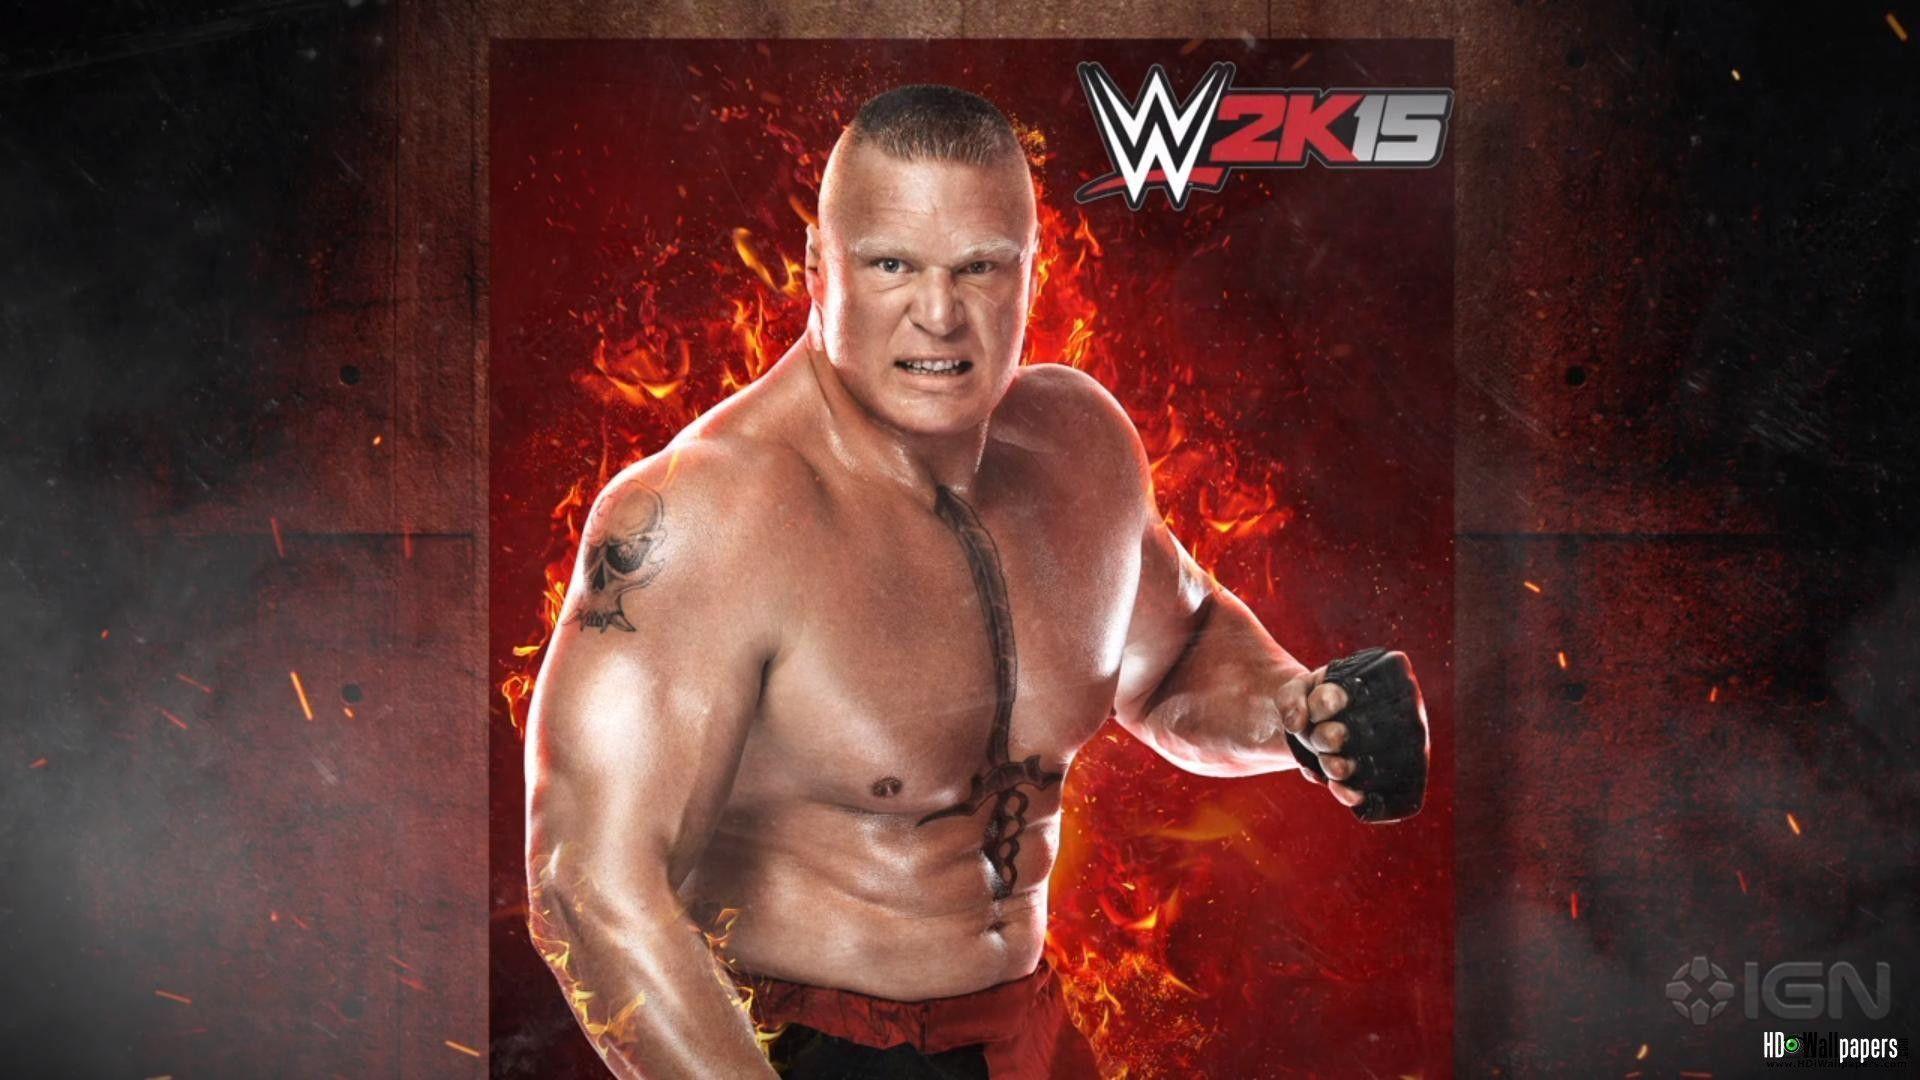 WWE Brock Lesnar HD Wallpaper Download Image & Photo. HD